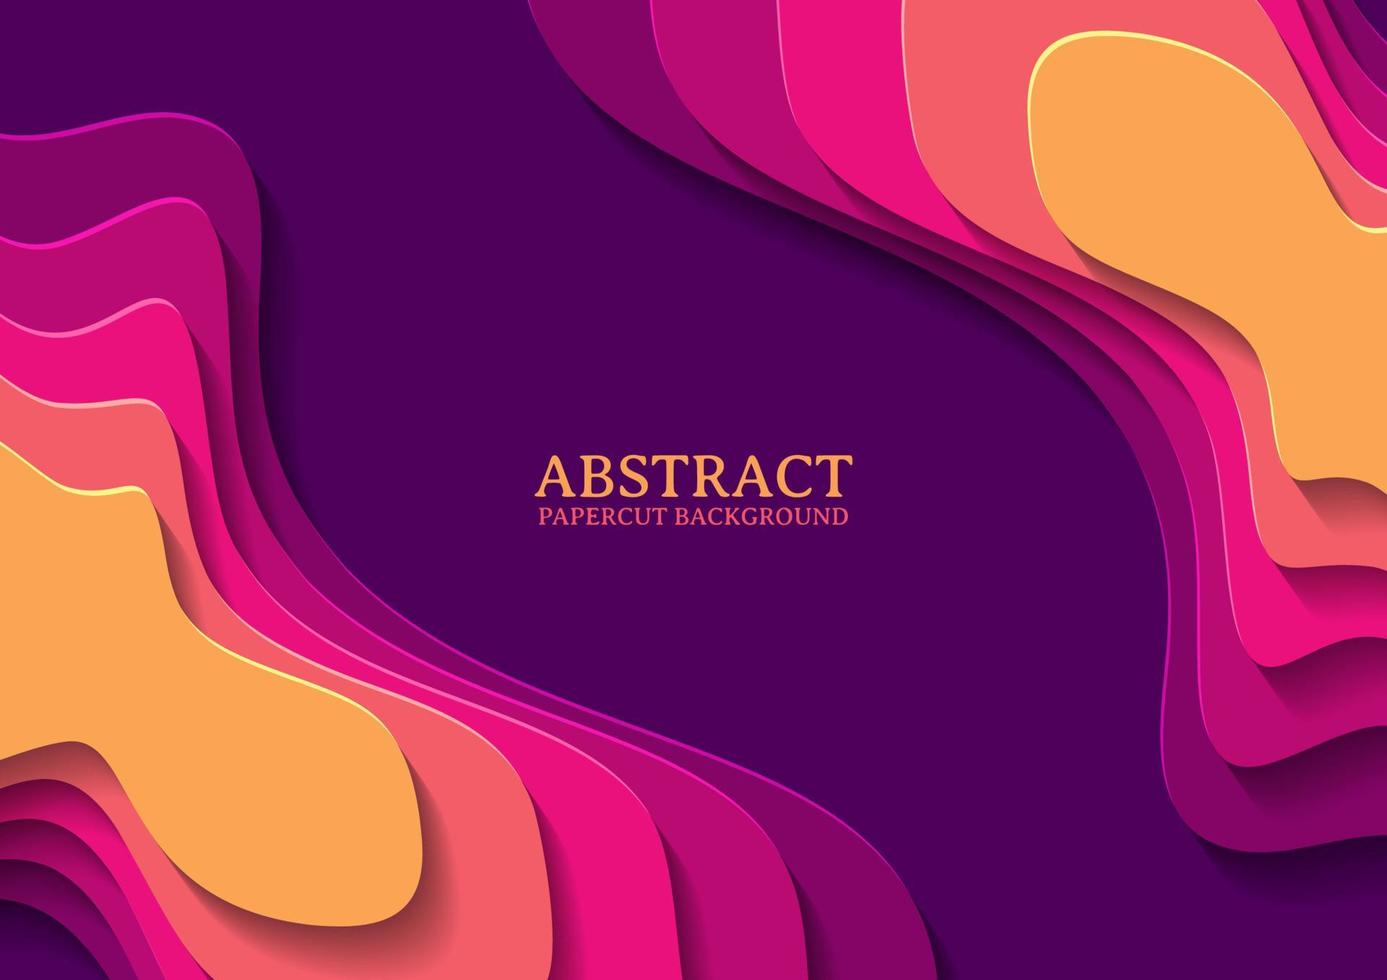 abstrakt papercut design bakgrund med överlappande lager vektor